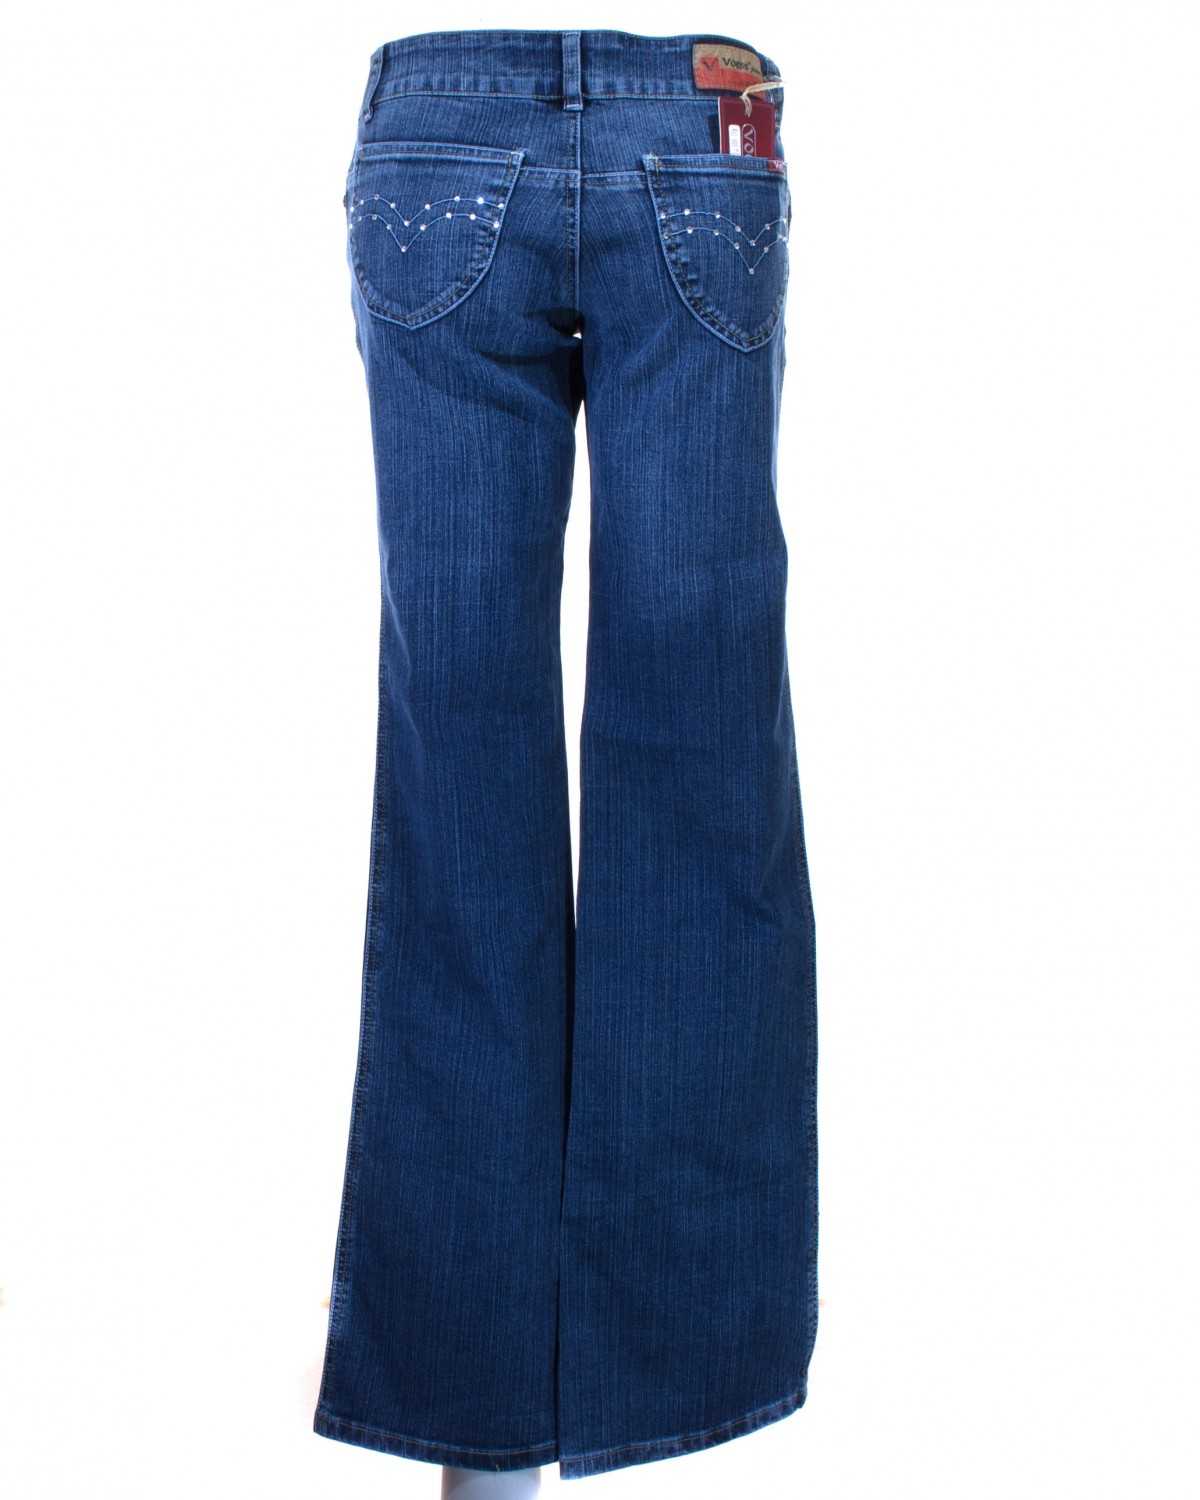 Практичная джинса — одно из лучших изобретений человечества